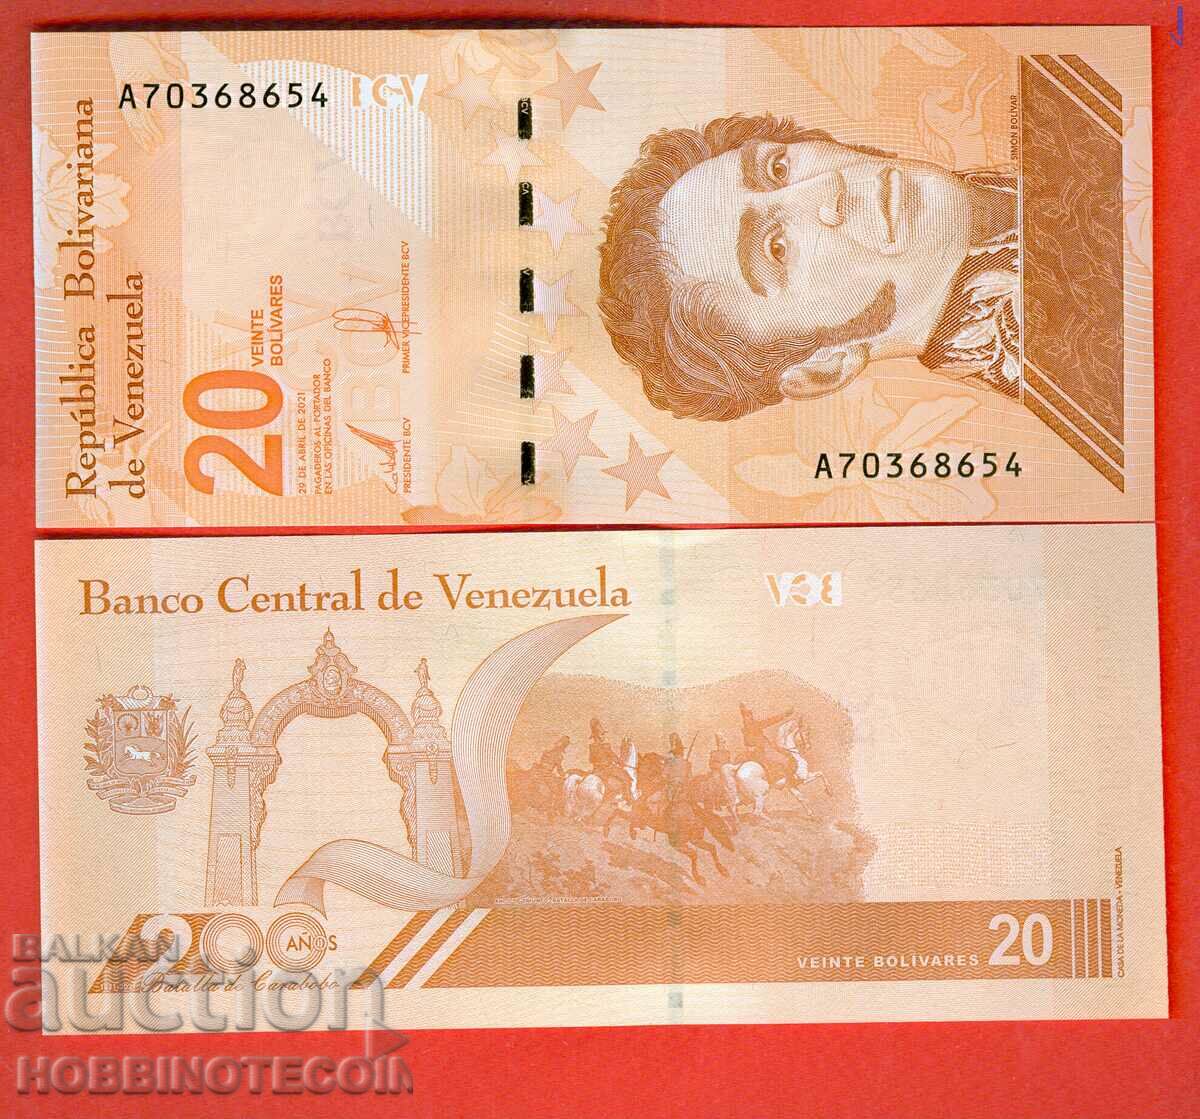 VENEZUELA VENEZUELA 20 - 20,000,000 - 2021 NEW UNC